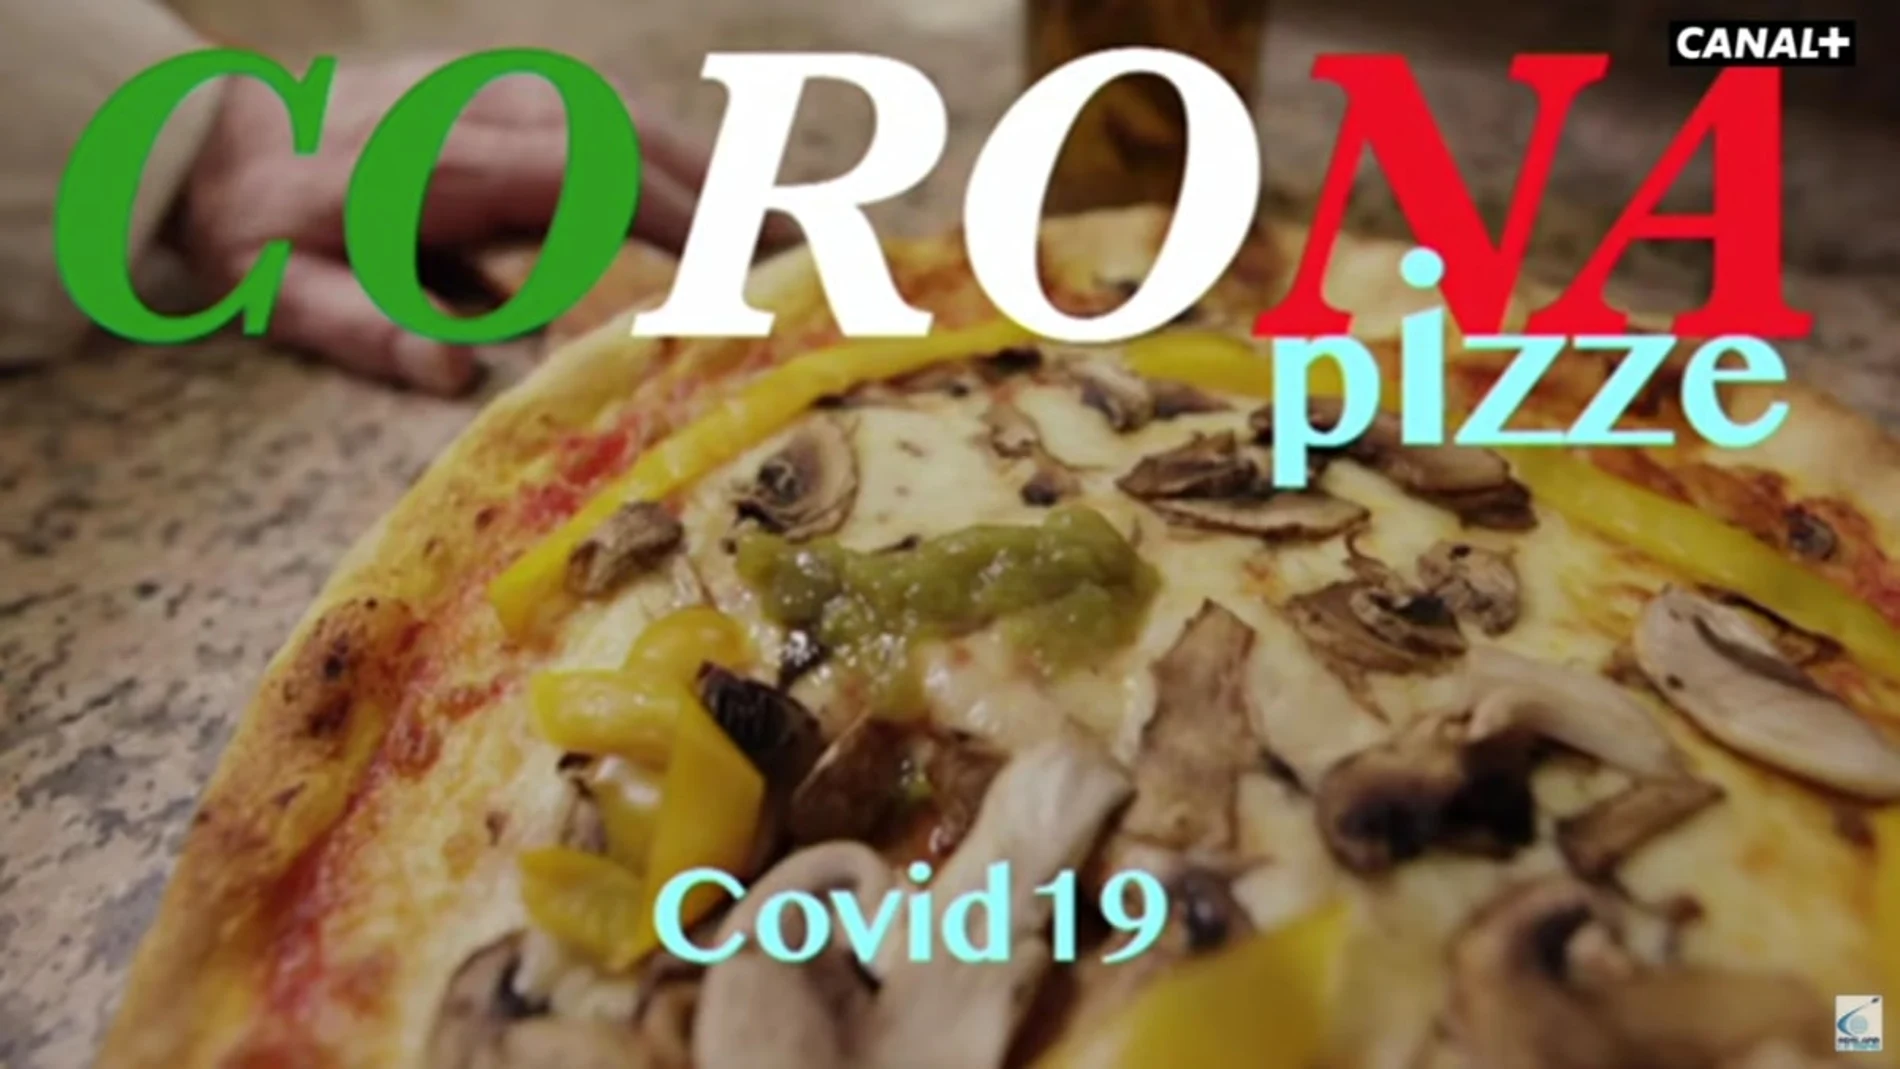 Vídeo satírico sobre la pizza y el coronavirus de Canal+